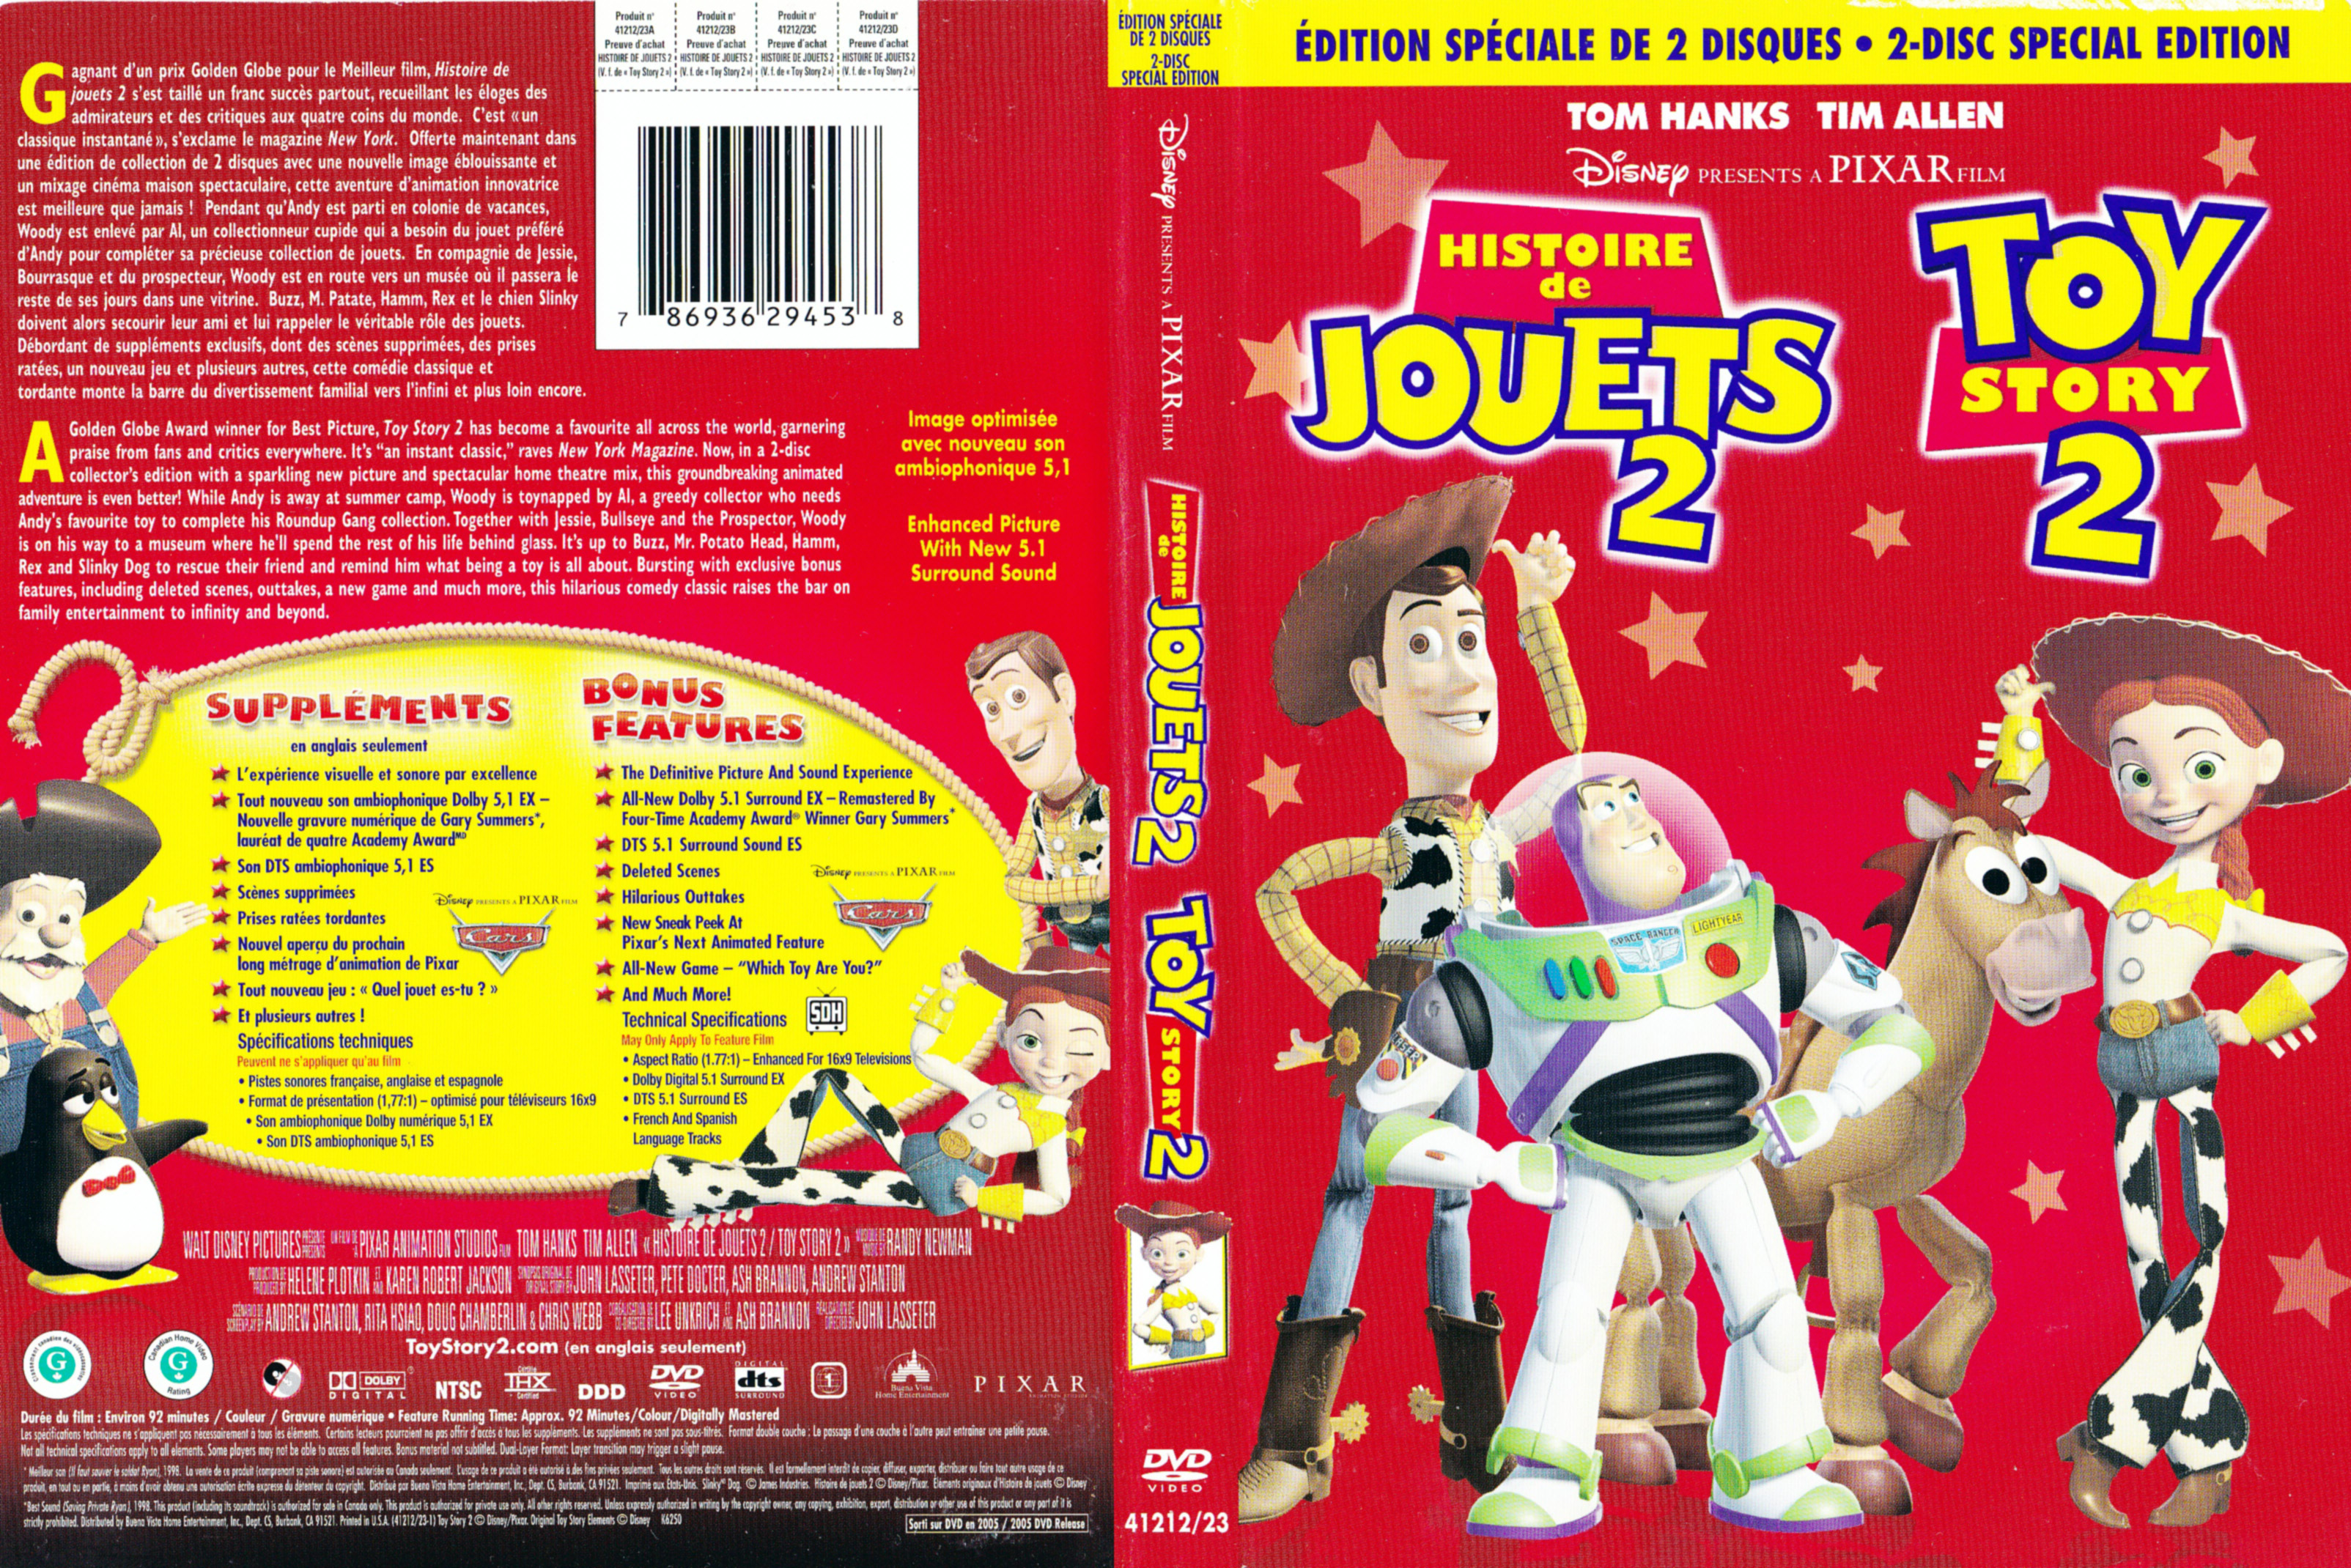 Jaquette DVD Histoire de jouet 2 - Toy story 2 (Canadienne)